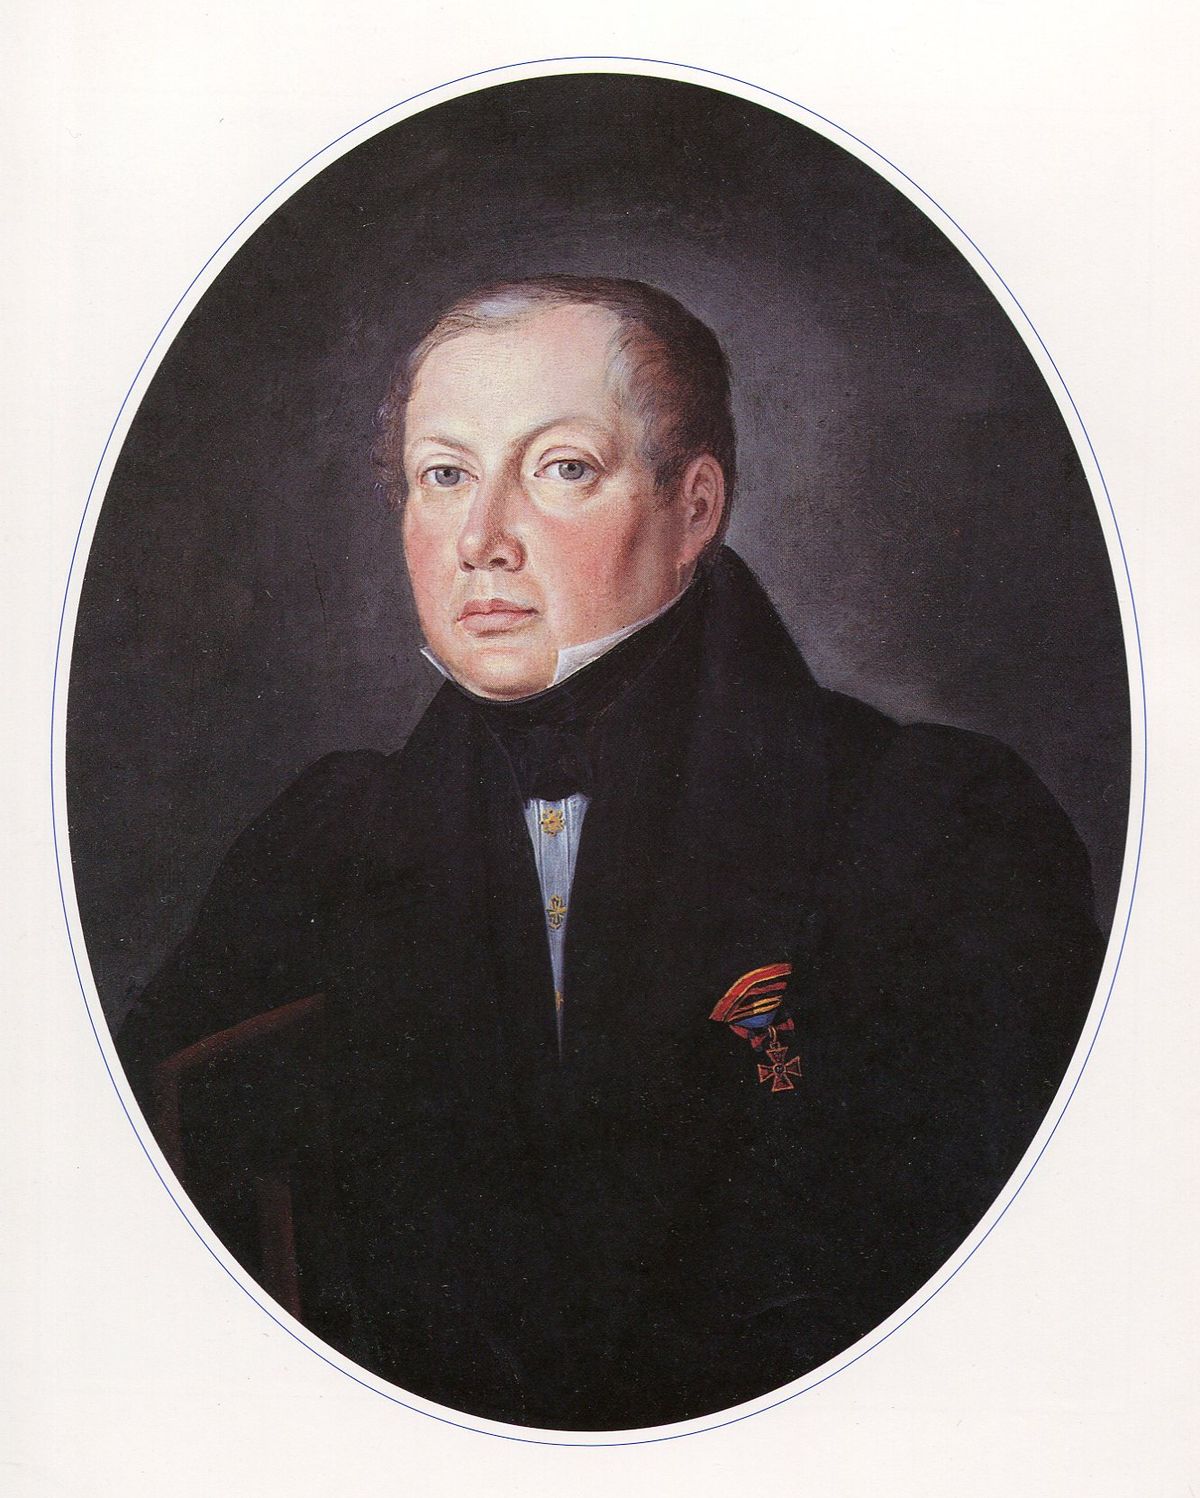 Aleksander Siergiejewicz Golicyn